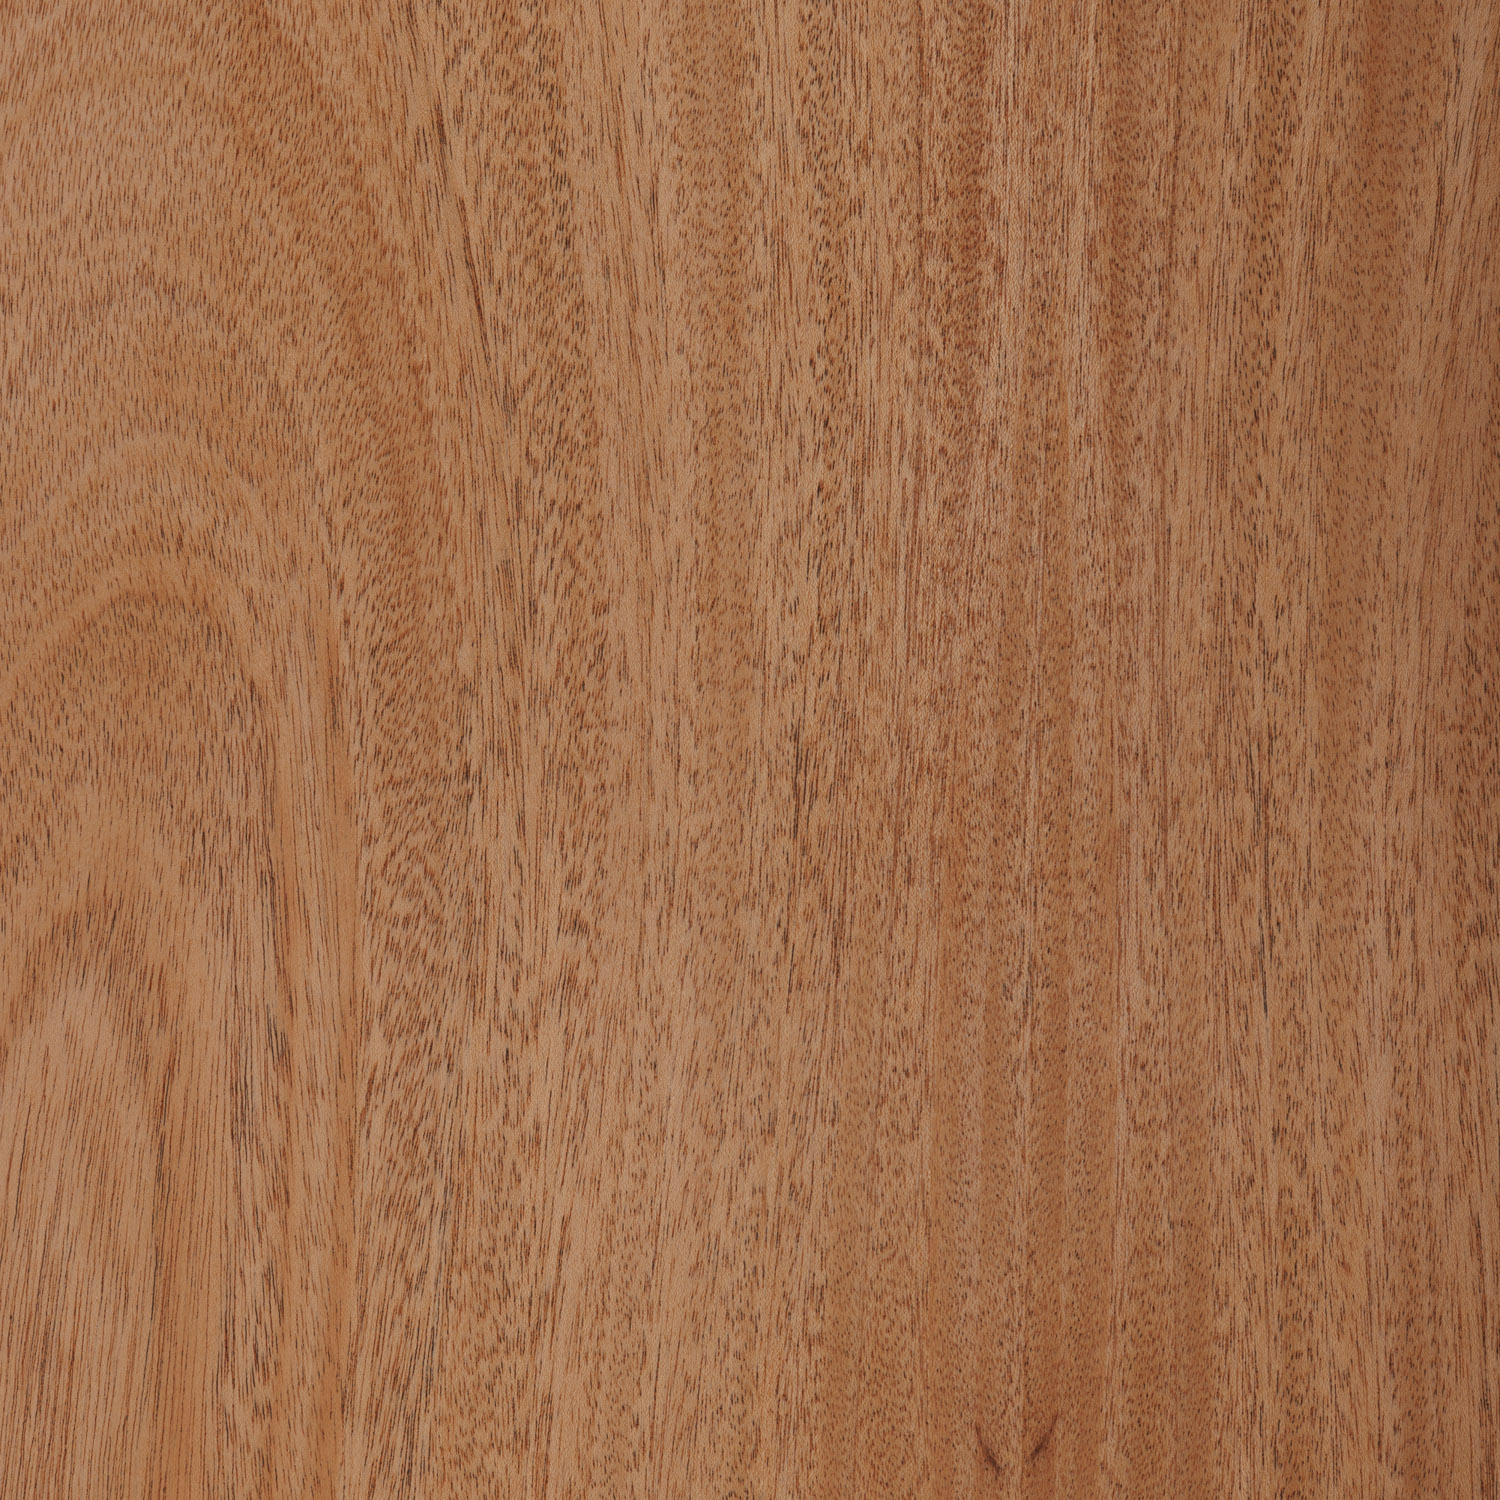 khaya natural wood veneer panel